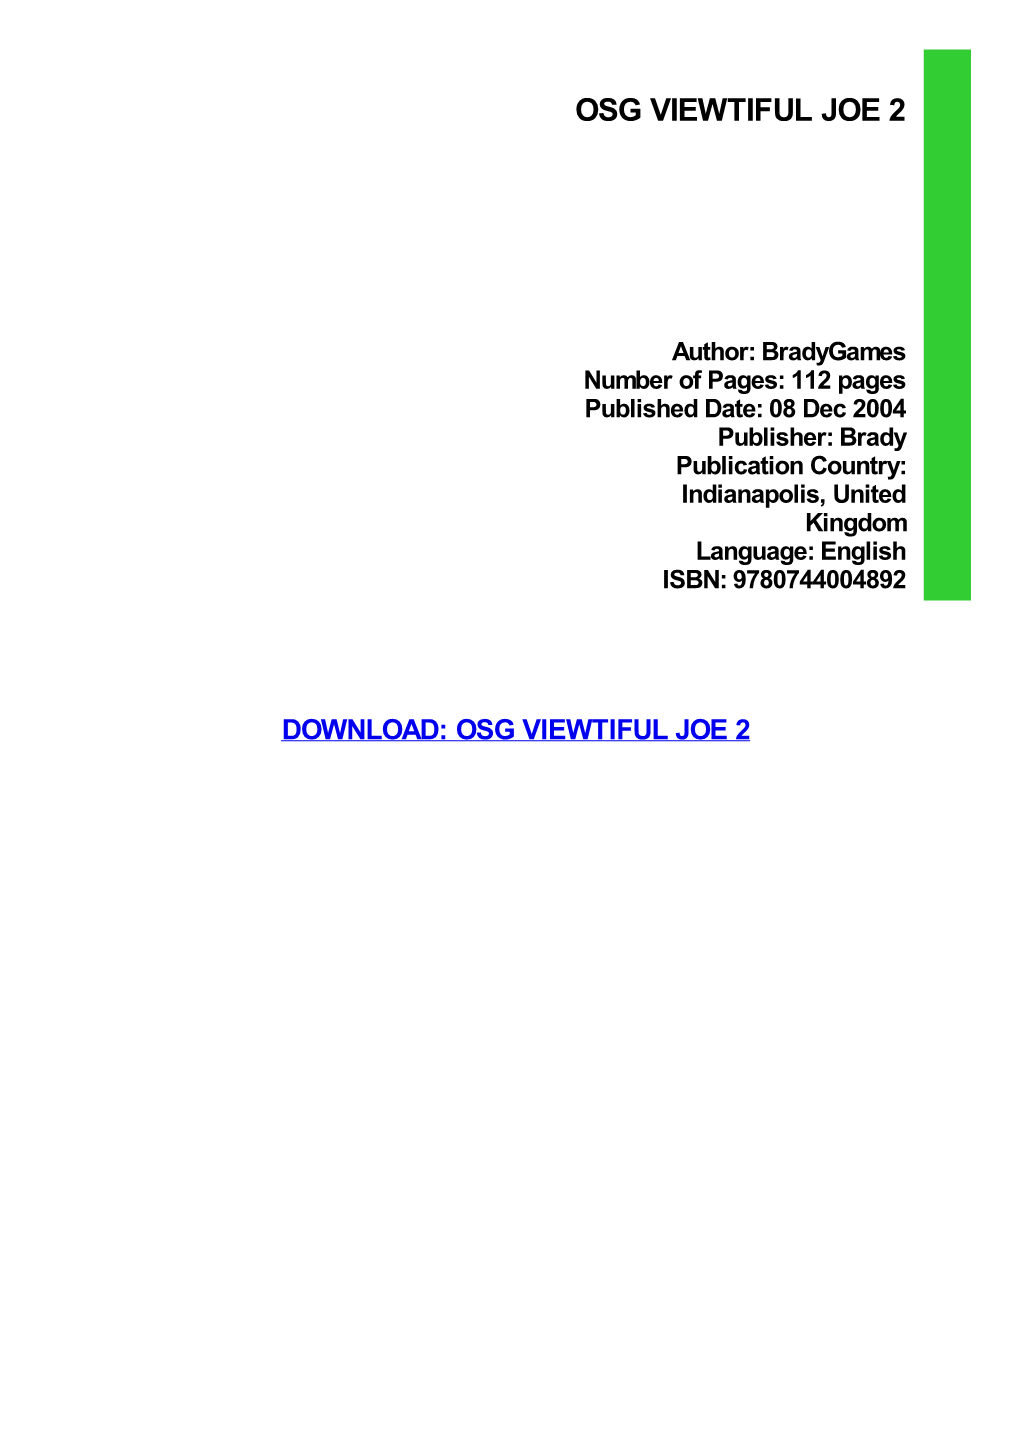 OSG Viewtiful Joe 2 Pdf Free Download